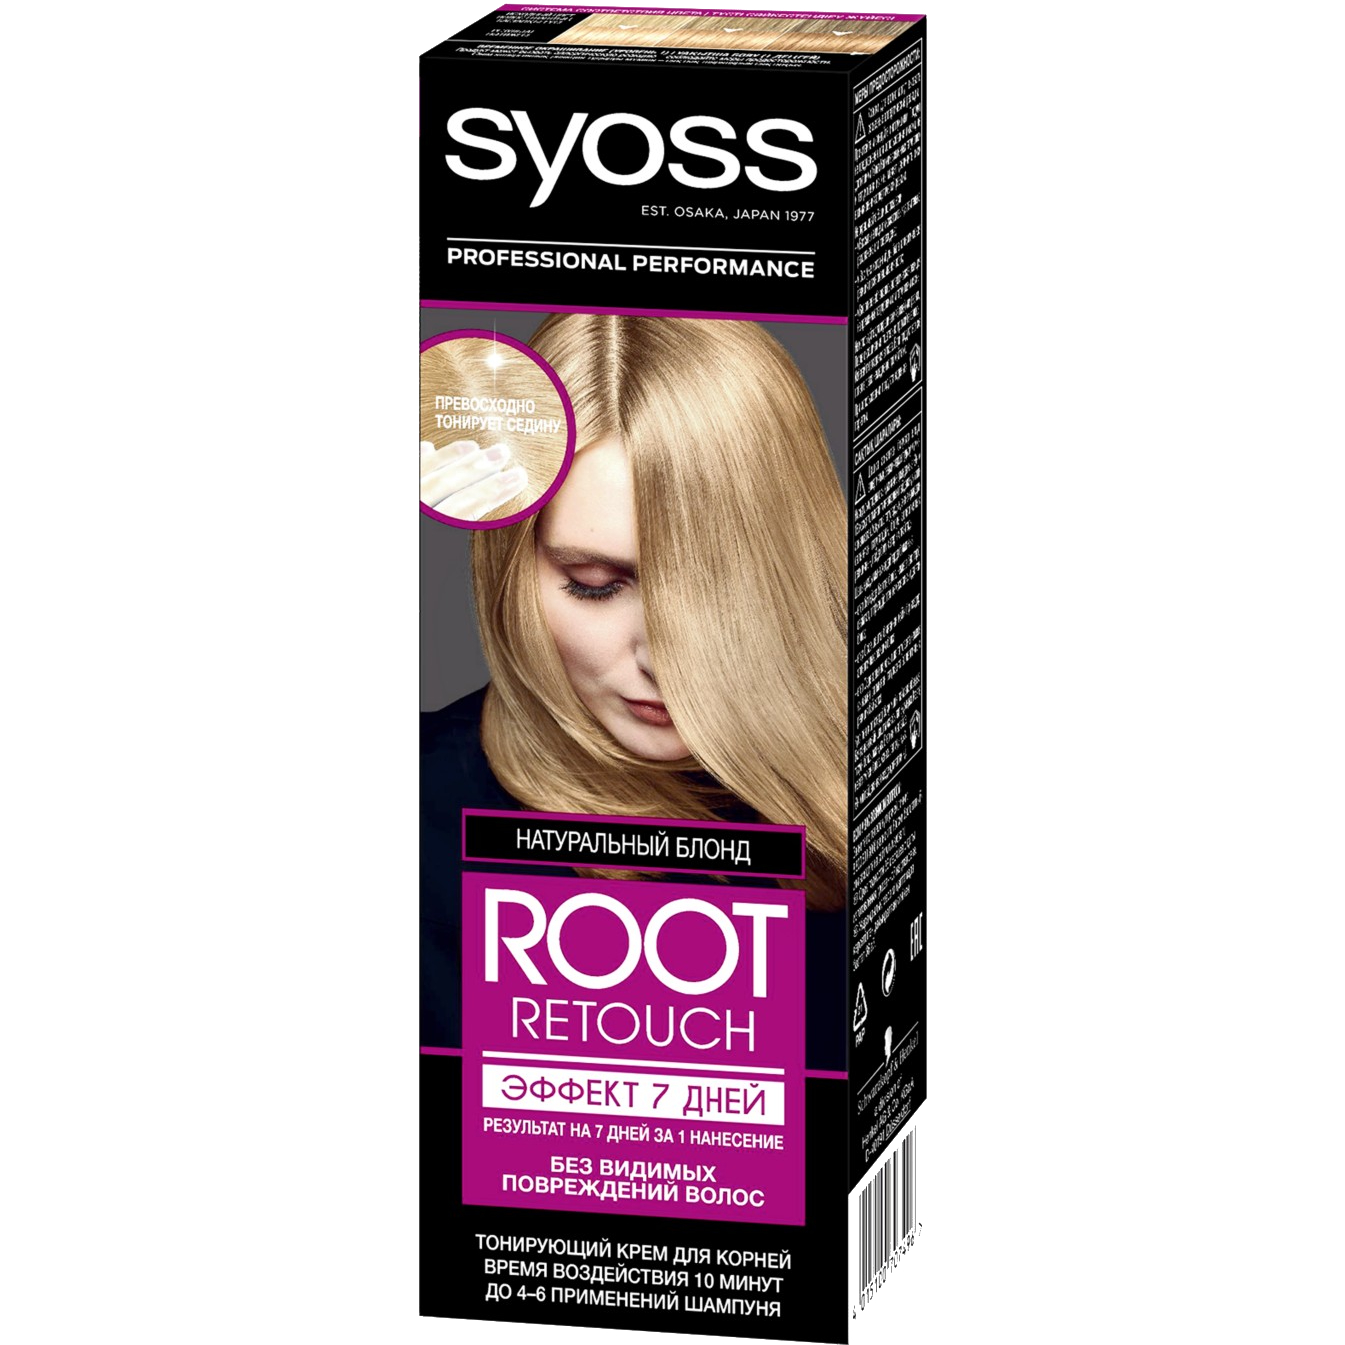 Крем для волос Syoss Root Retoucher тонирующий Эффект 7 дней оттенок 8.0 Натуральный Блонд, 60 мл крем для лица ballet натуральный с лецитином тонирующий 40 г